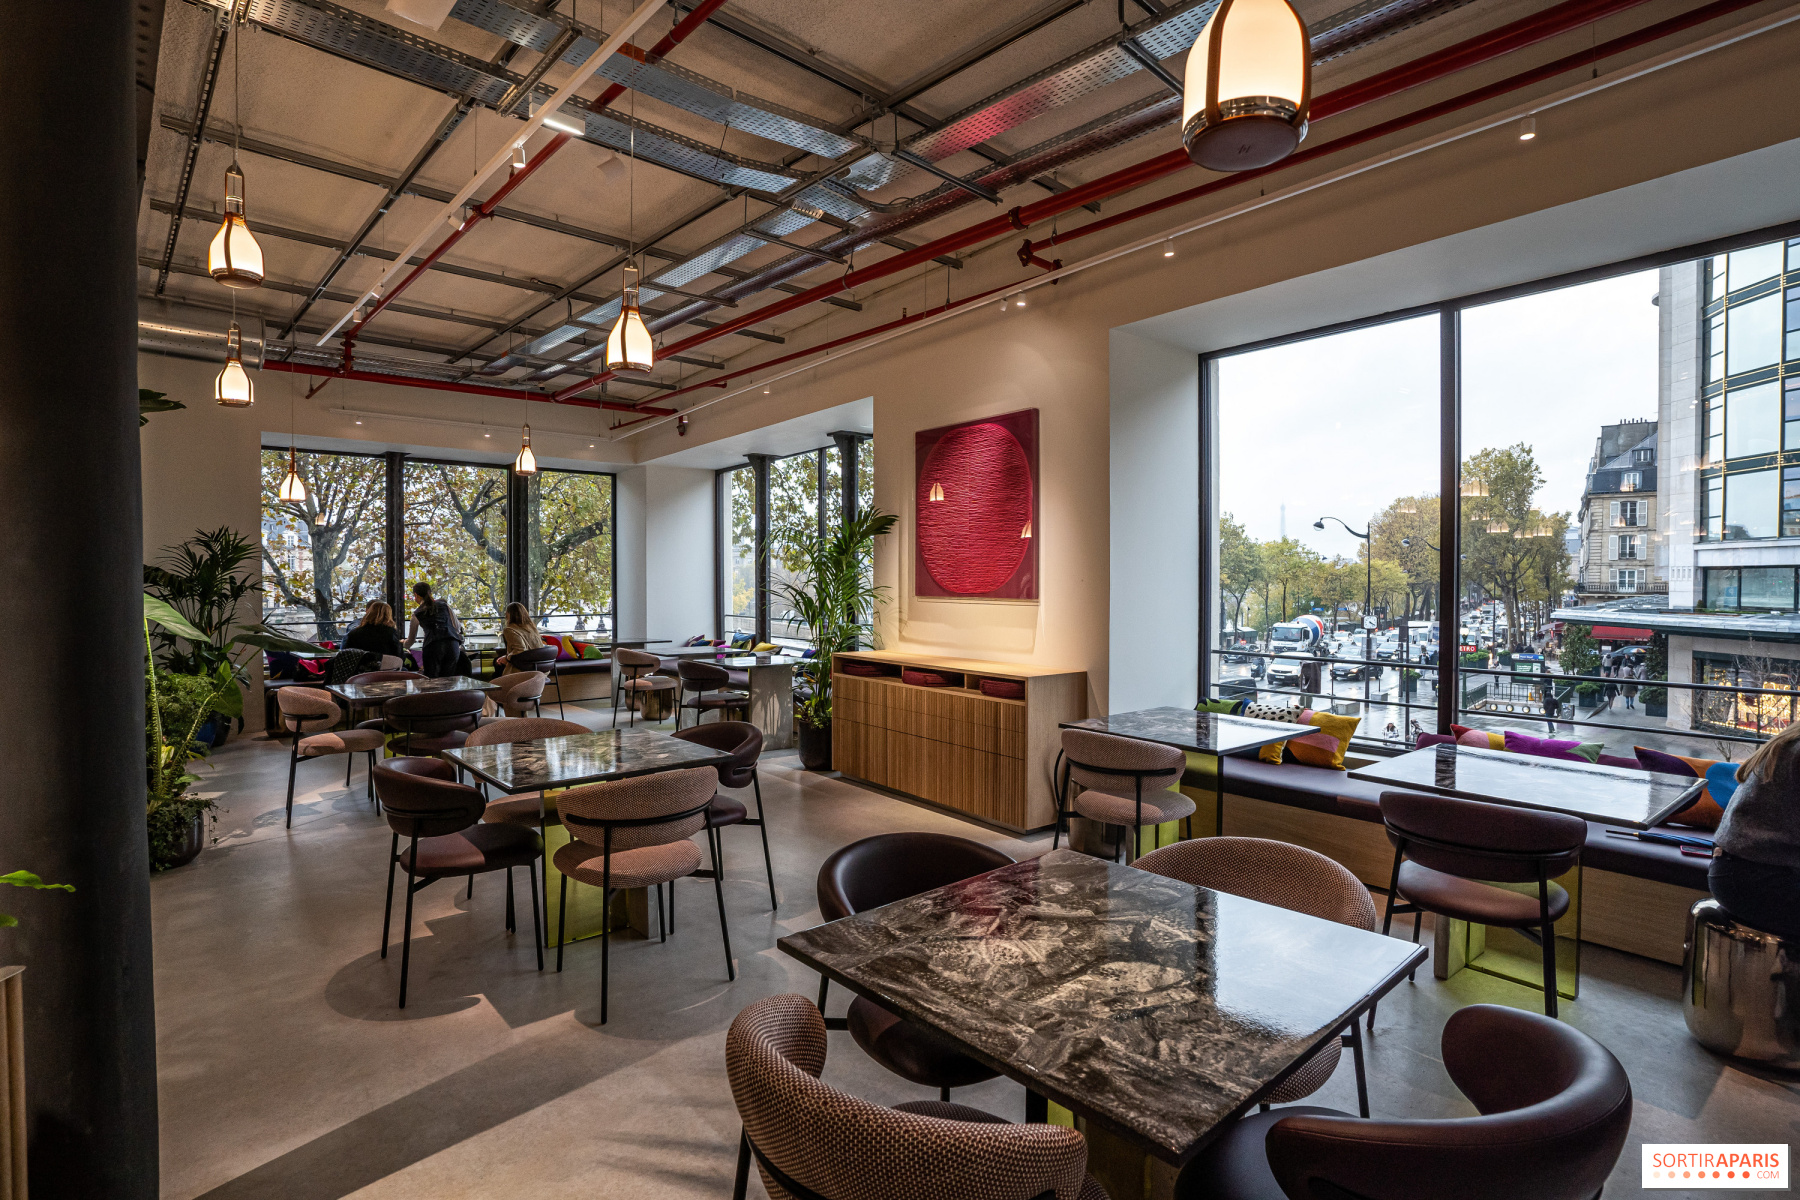 Louis Vuitton Café, O'Bon Paris